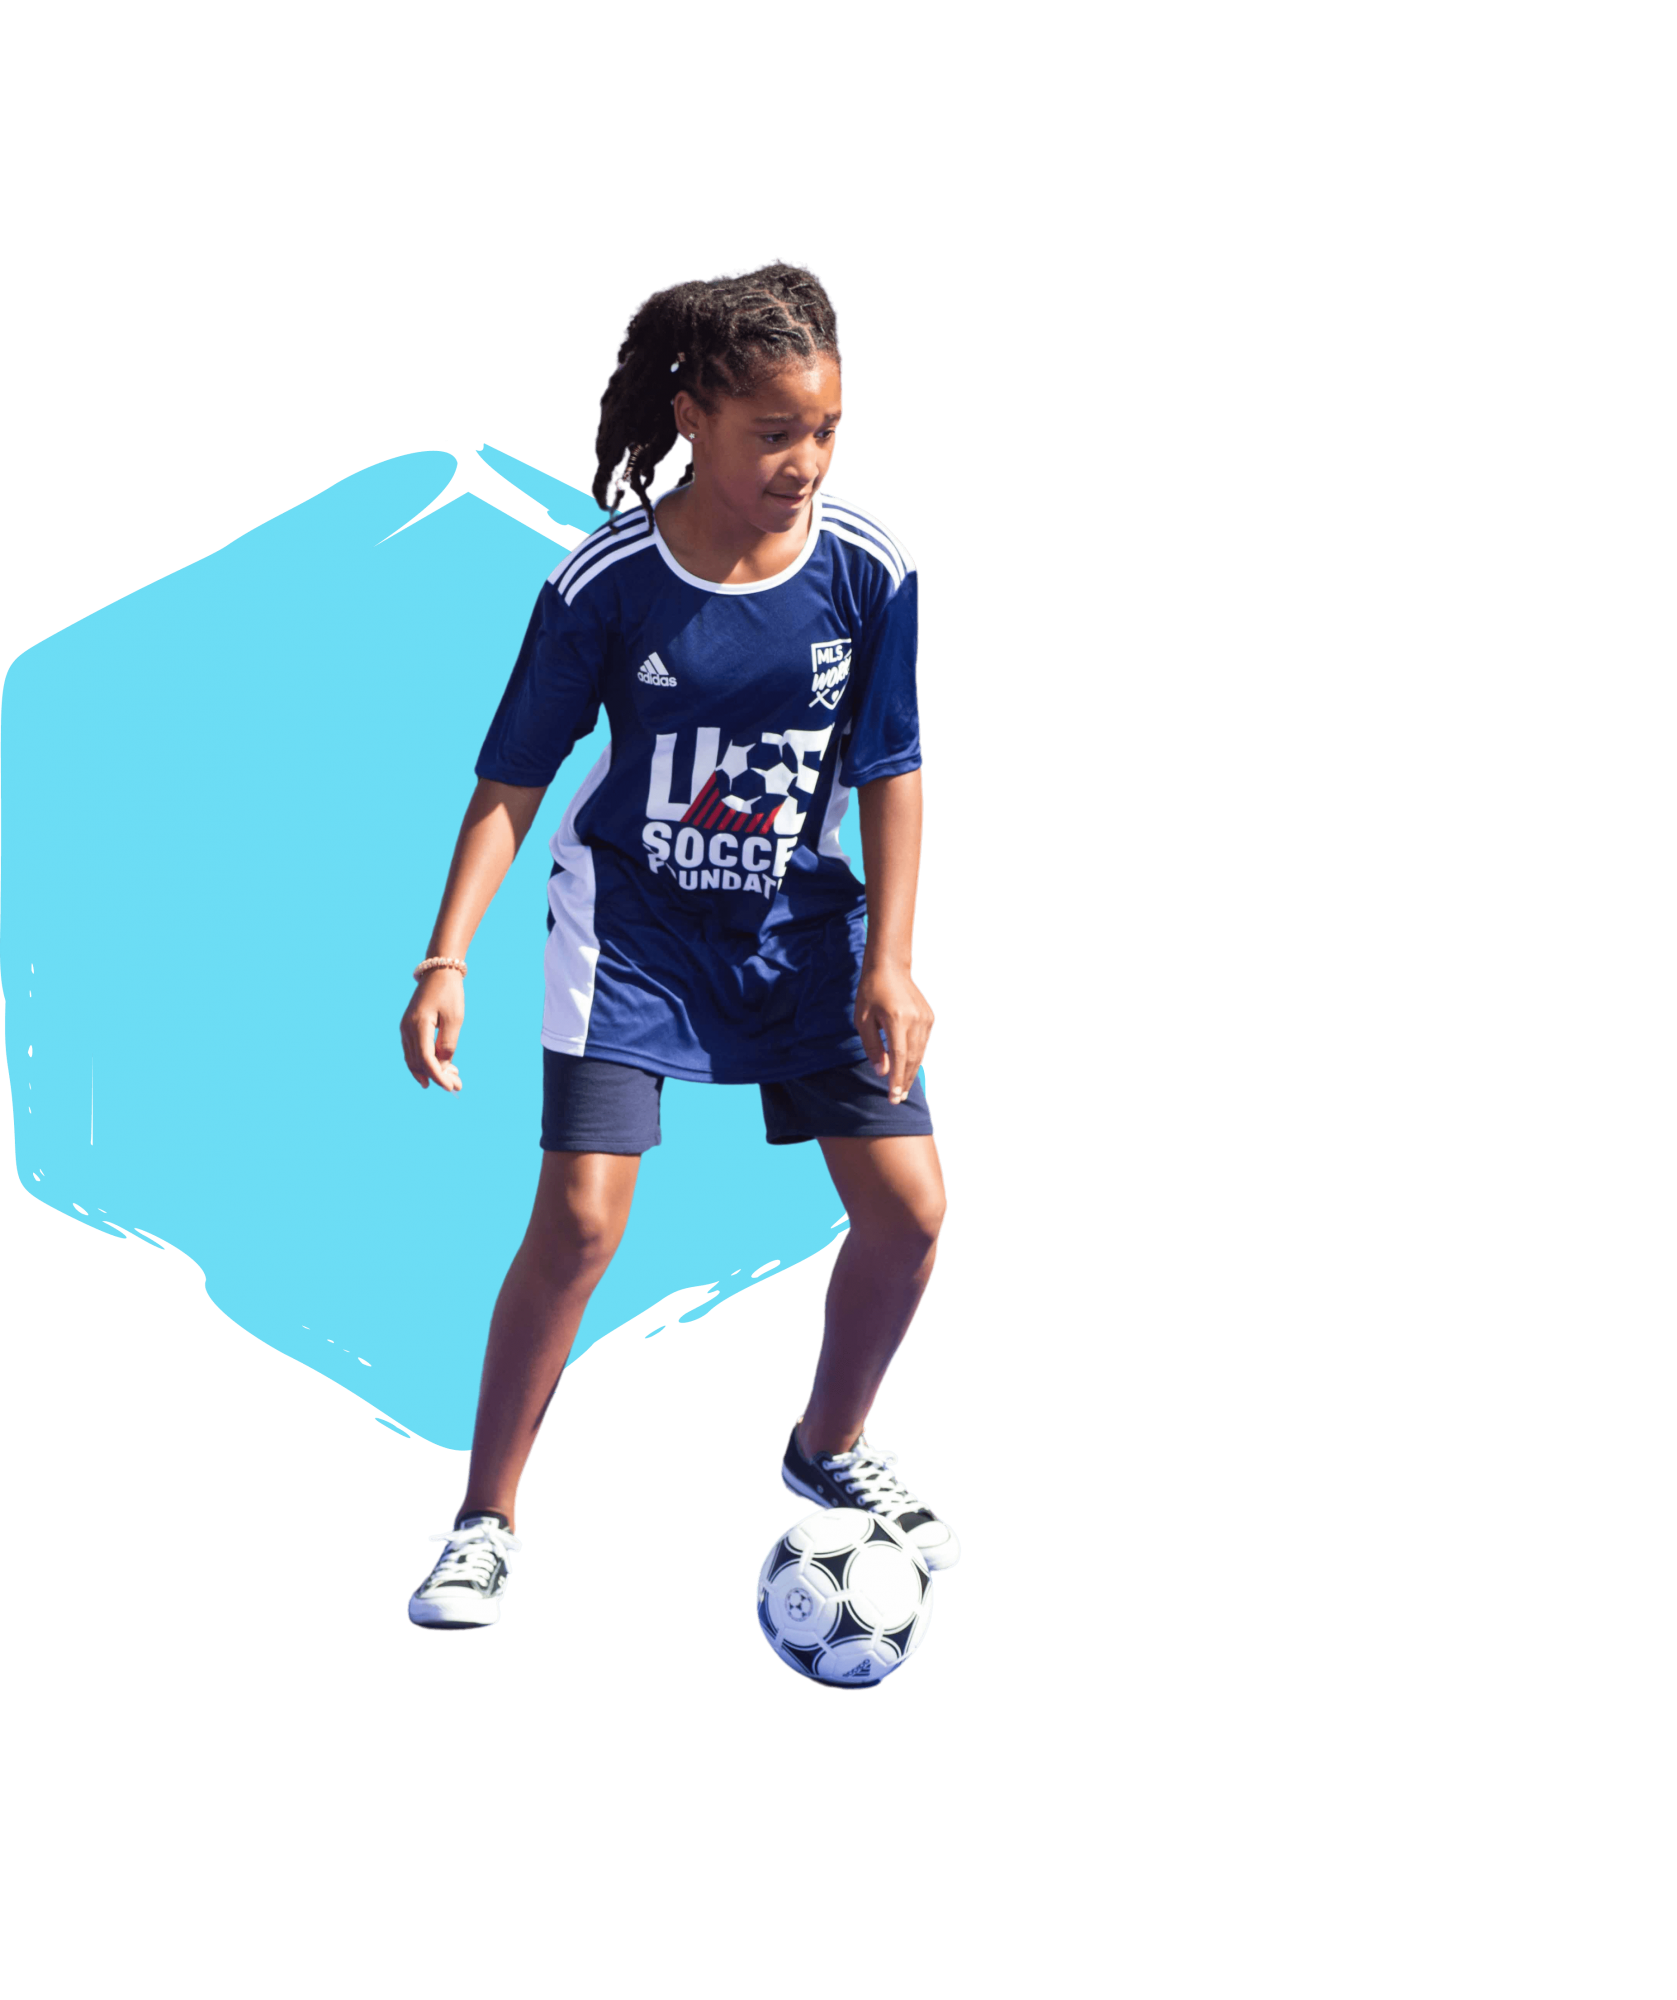 “Transformamos la vida de los niños” sobre un fondo blanco, rodeado de cuatro imágenes de niños sonriendo y jugando fútbol.